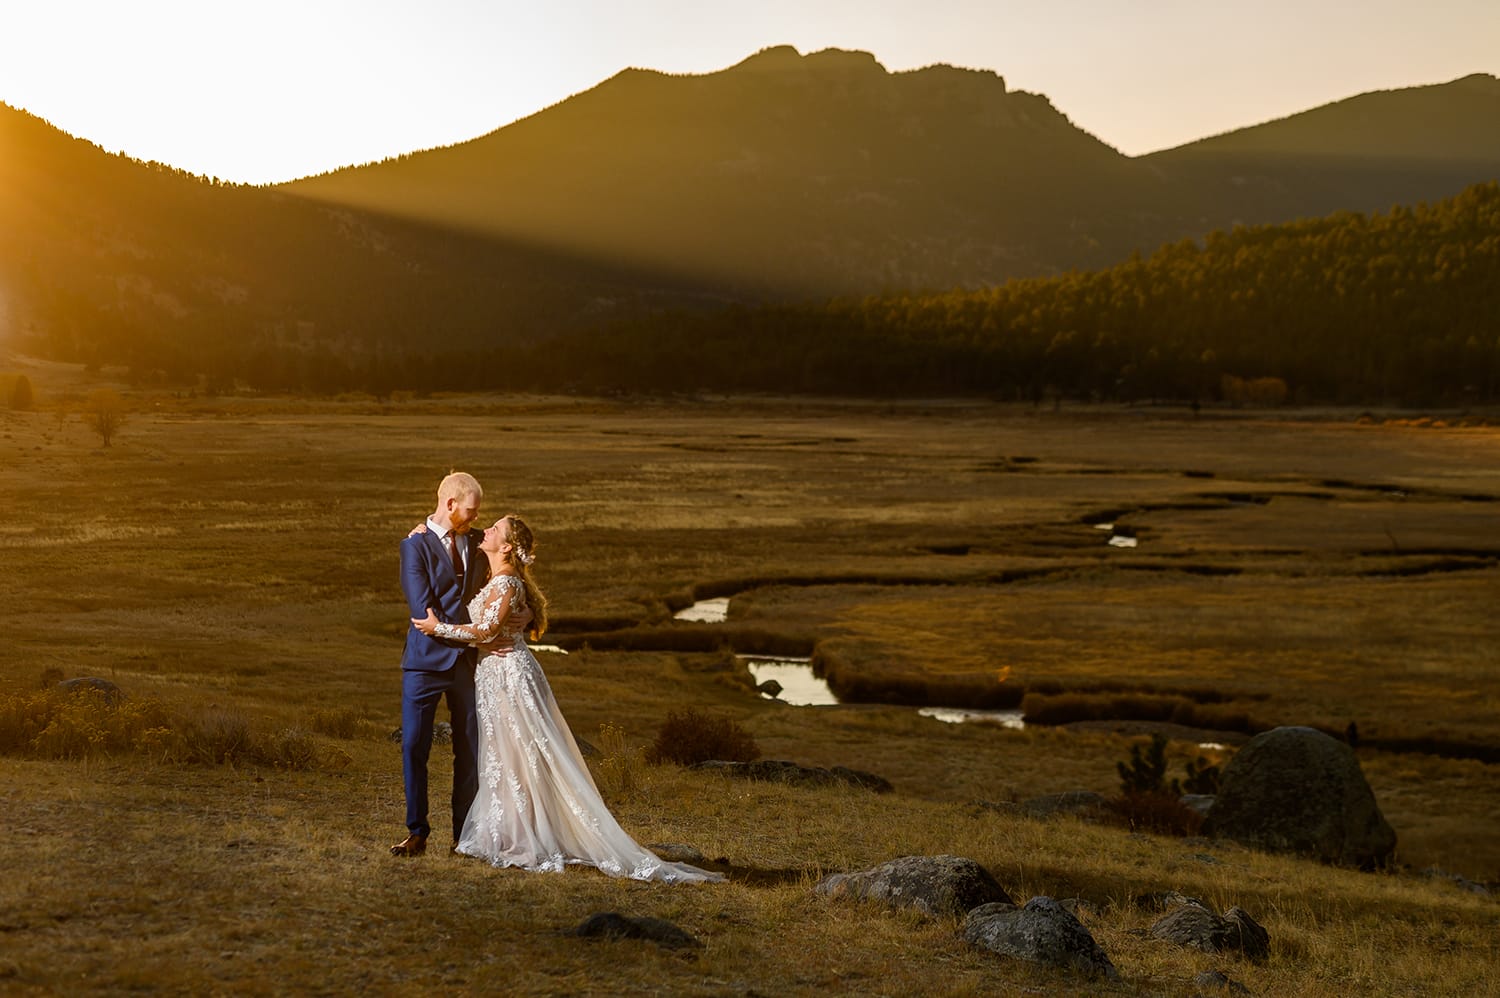 Crystalyn & Sean – Wild Basin Lodge Wedding Photos